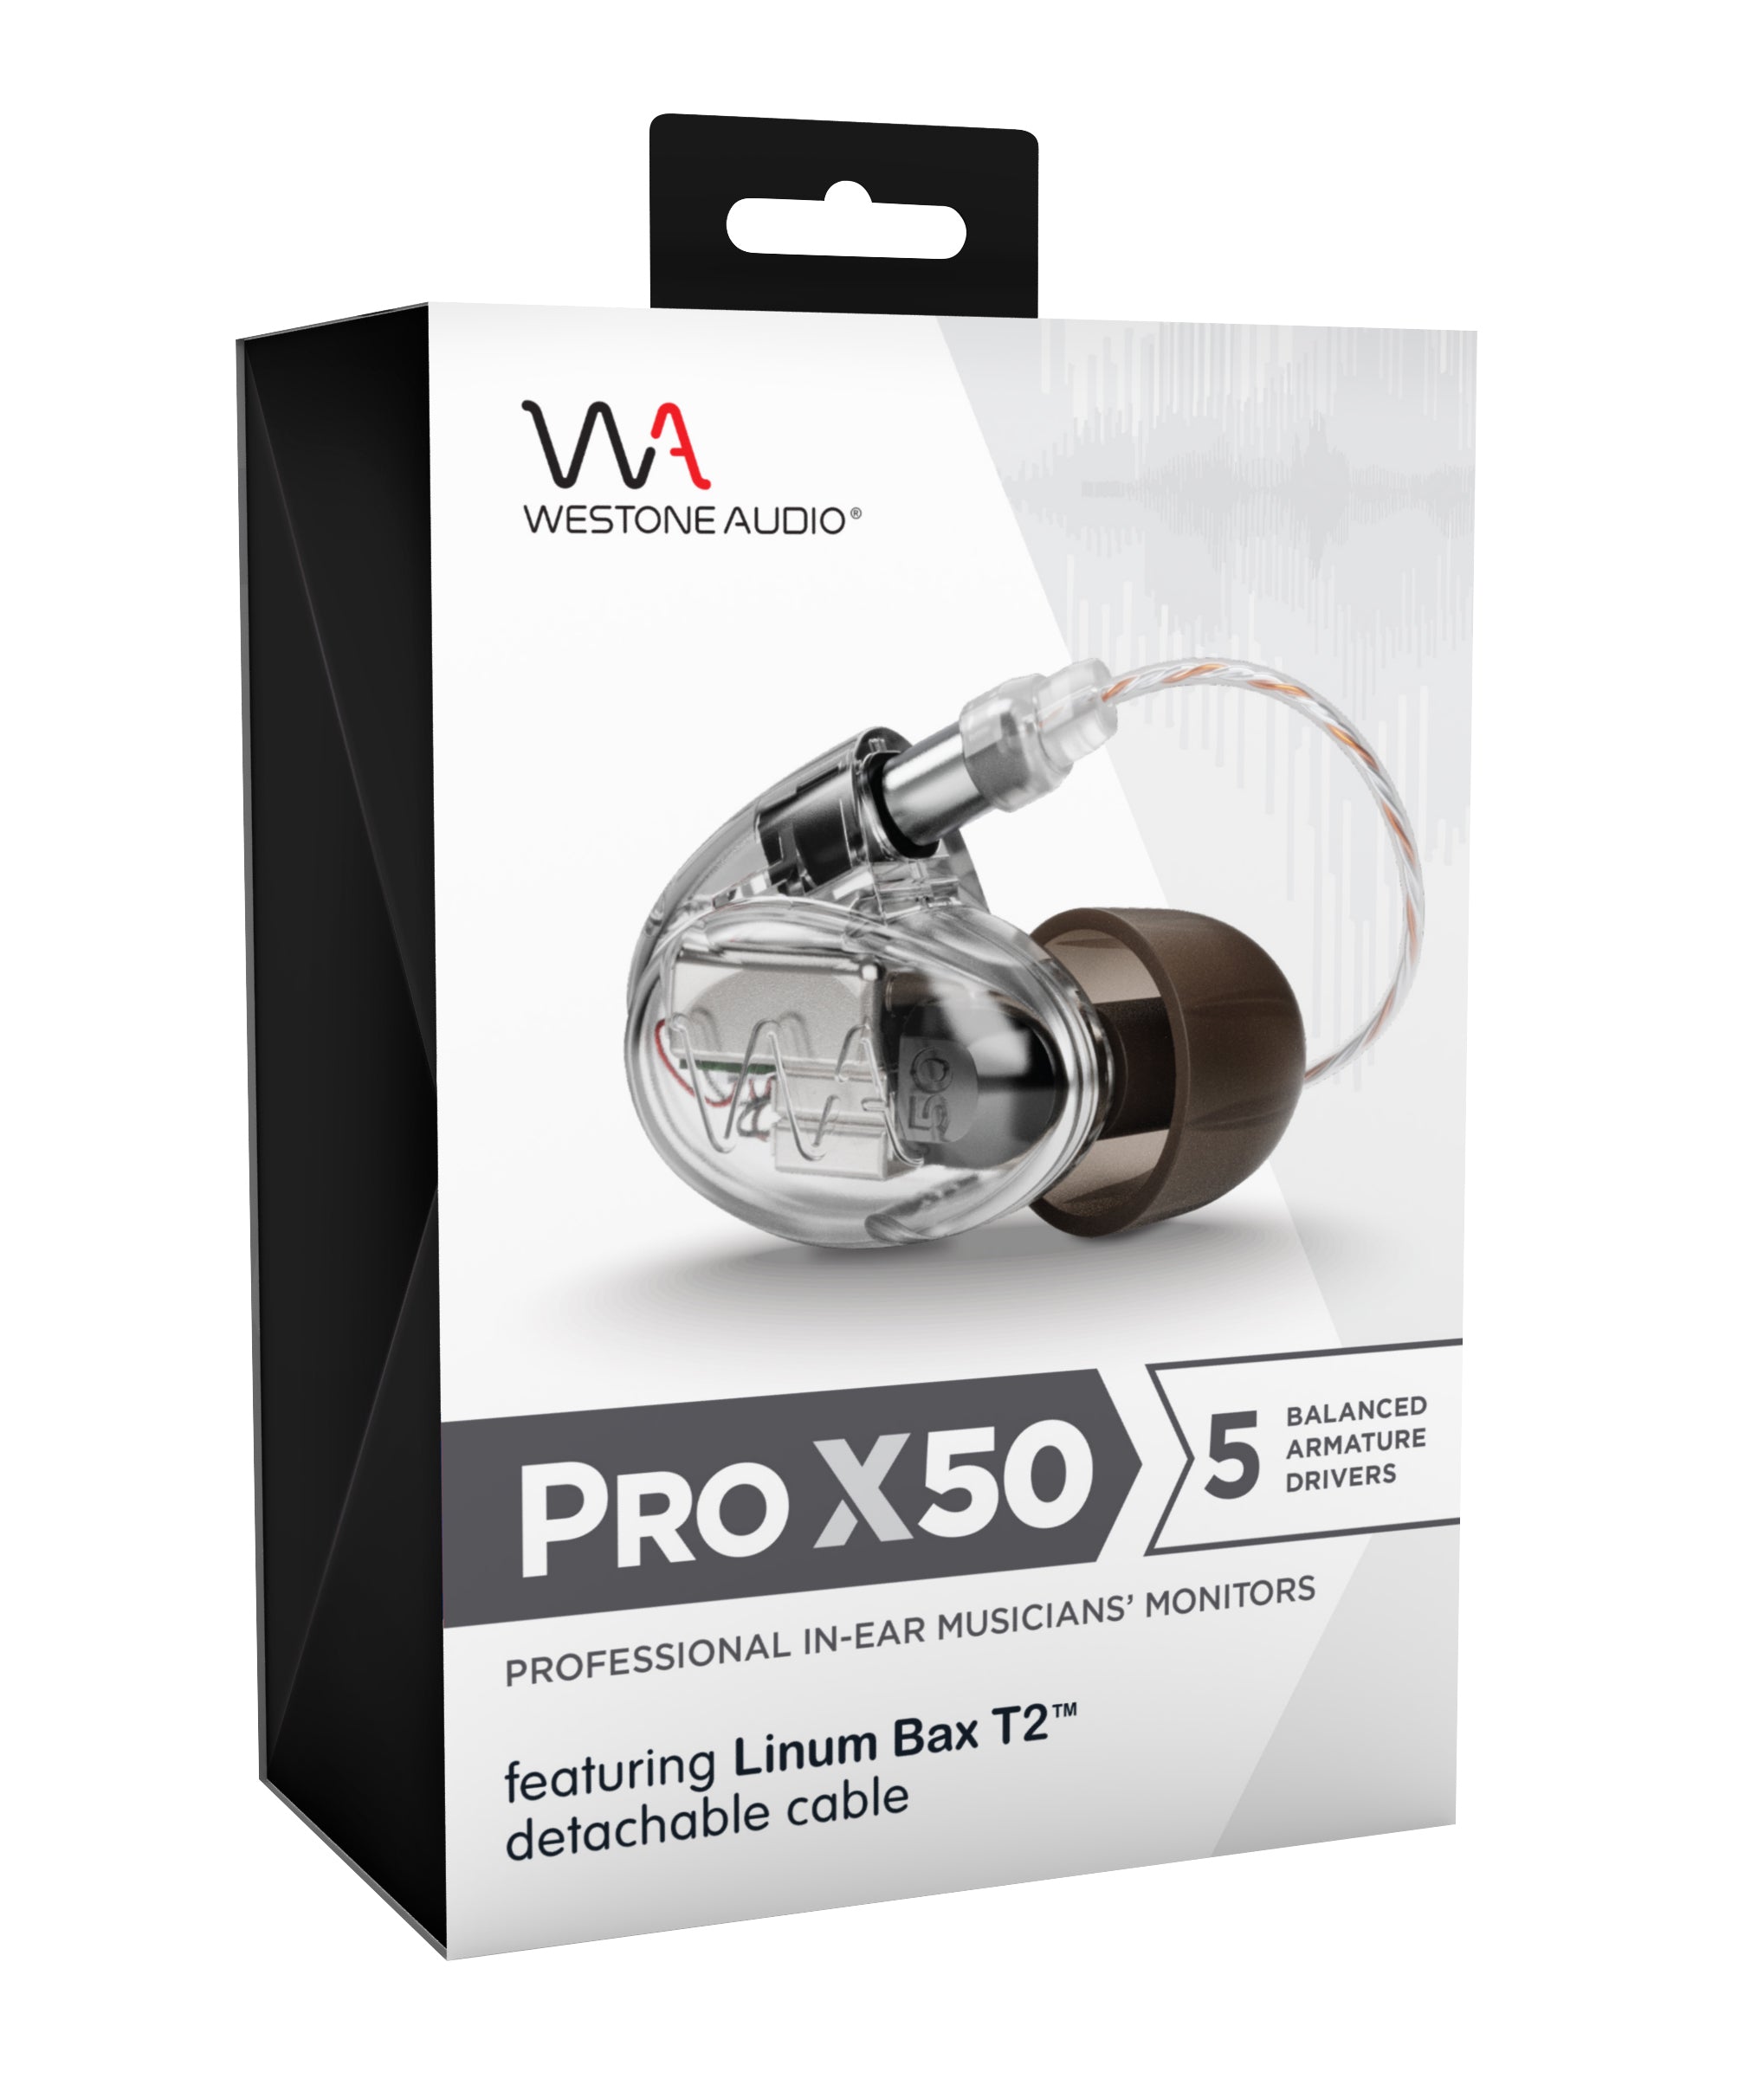 Westone Audio Pro X50 - Professional Five Drivers IEM Earphones with Linum BaX T2 Detachable Cable